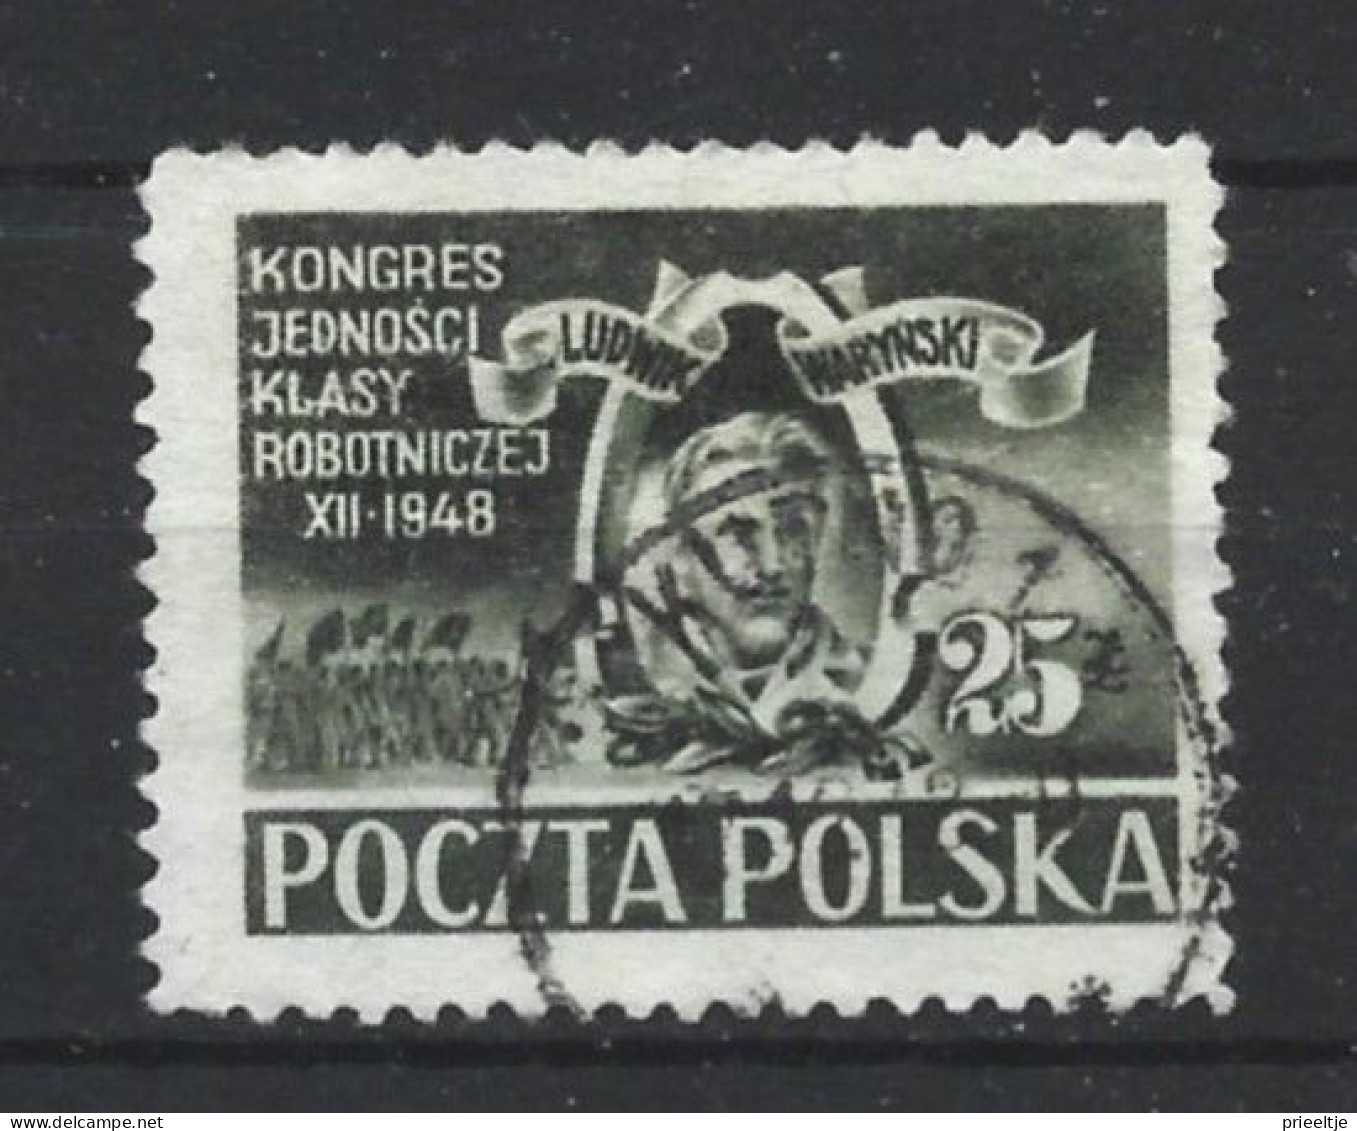 Poland 1948 Worker's Union Congress Y.T. 543 (0) - Gebraucht